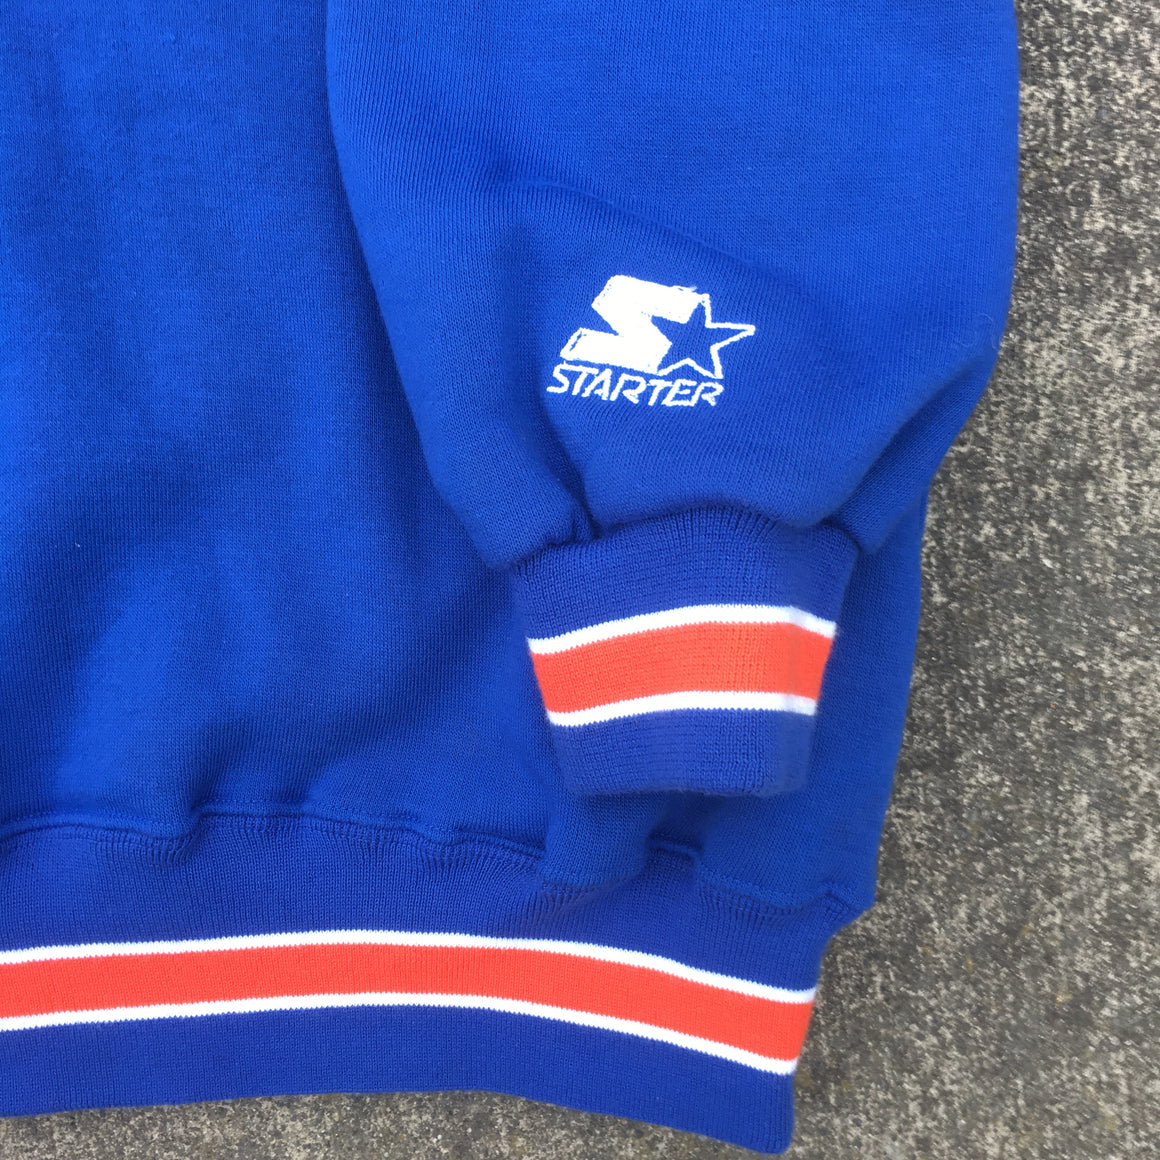 Denver Broncos sweatshirt by Starter - XL